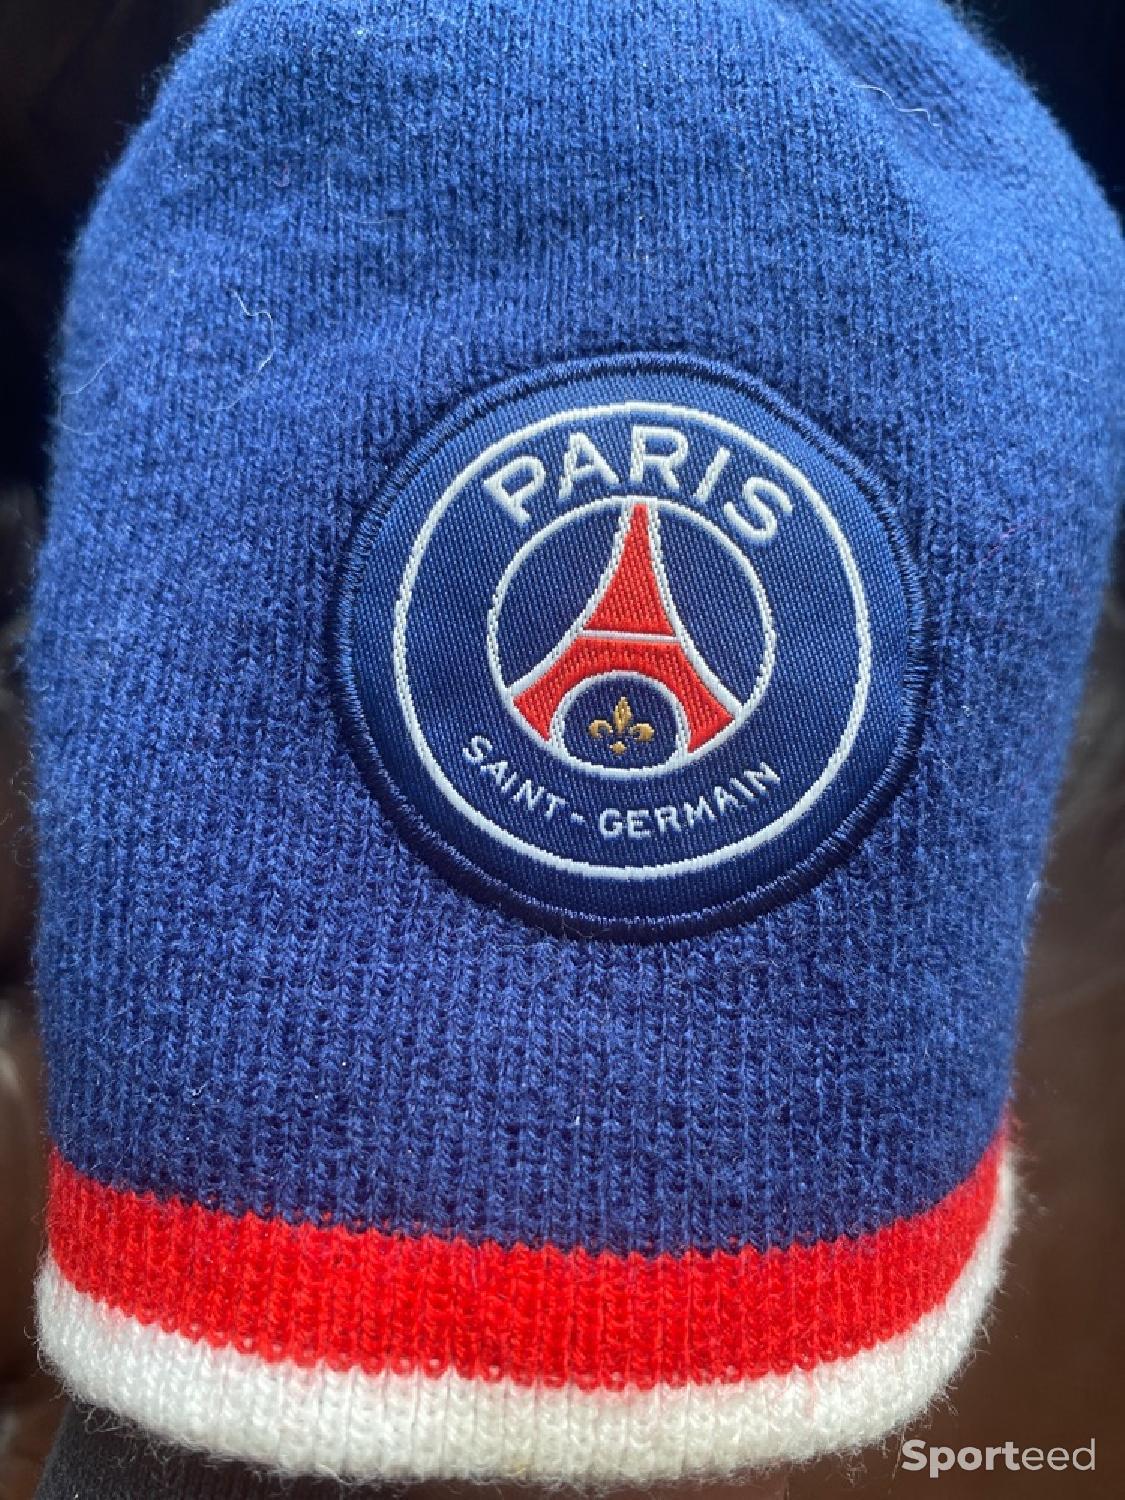 Bonnet et gants Paris Saint Germain